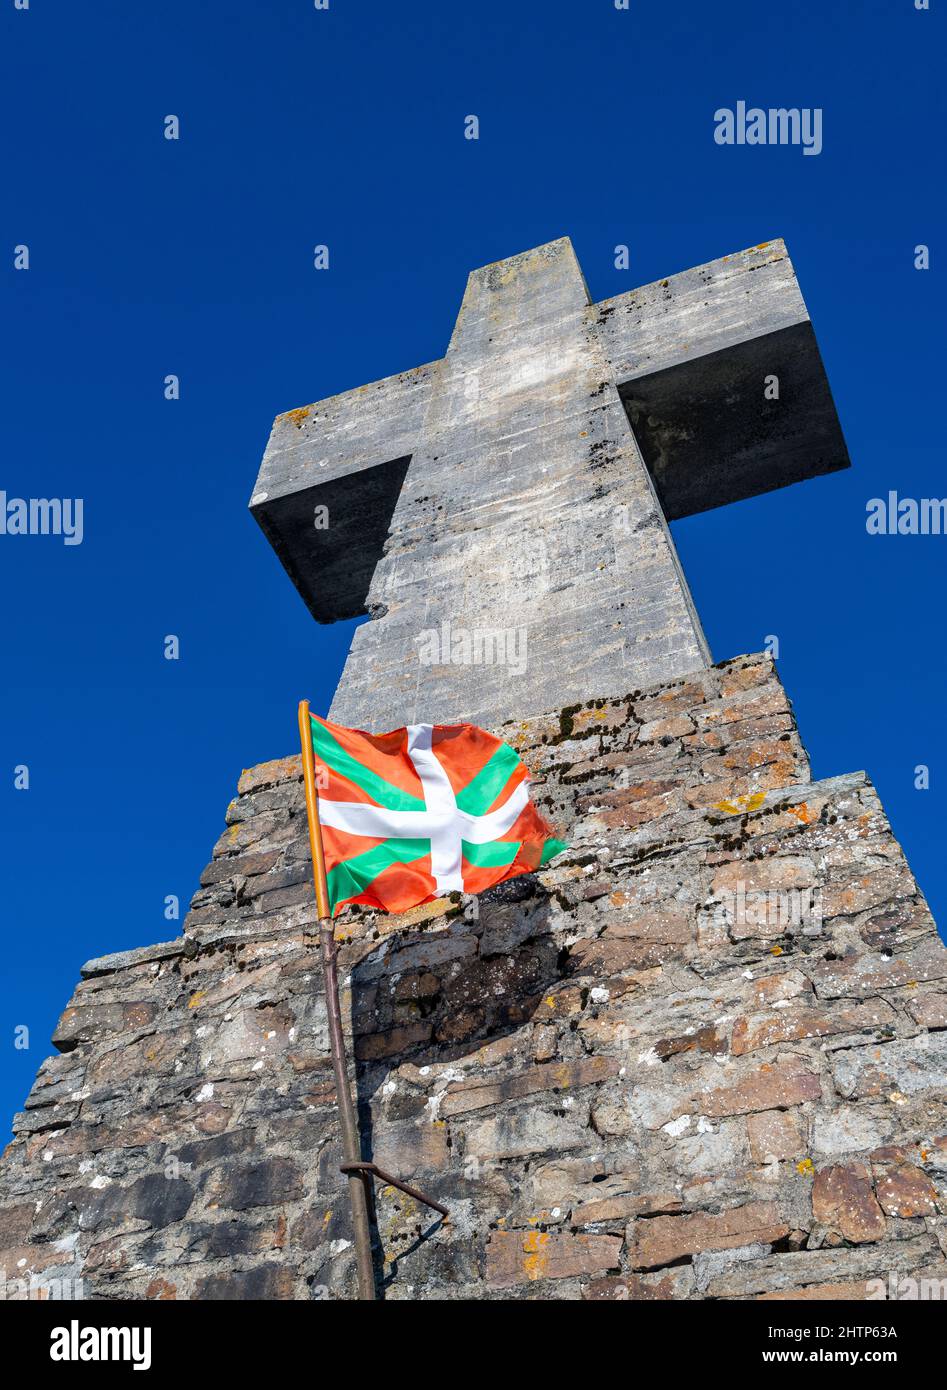 Drapeau du pays Basque volant à côté d'une grande croix de pierre au Parc naturel d'Urkiola dans le pays Basque nord, Espagne Banque D'Images